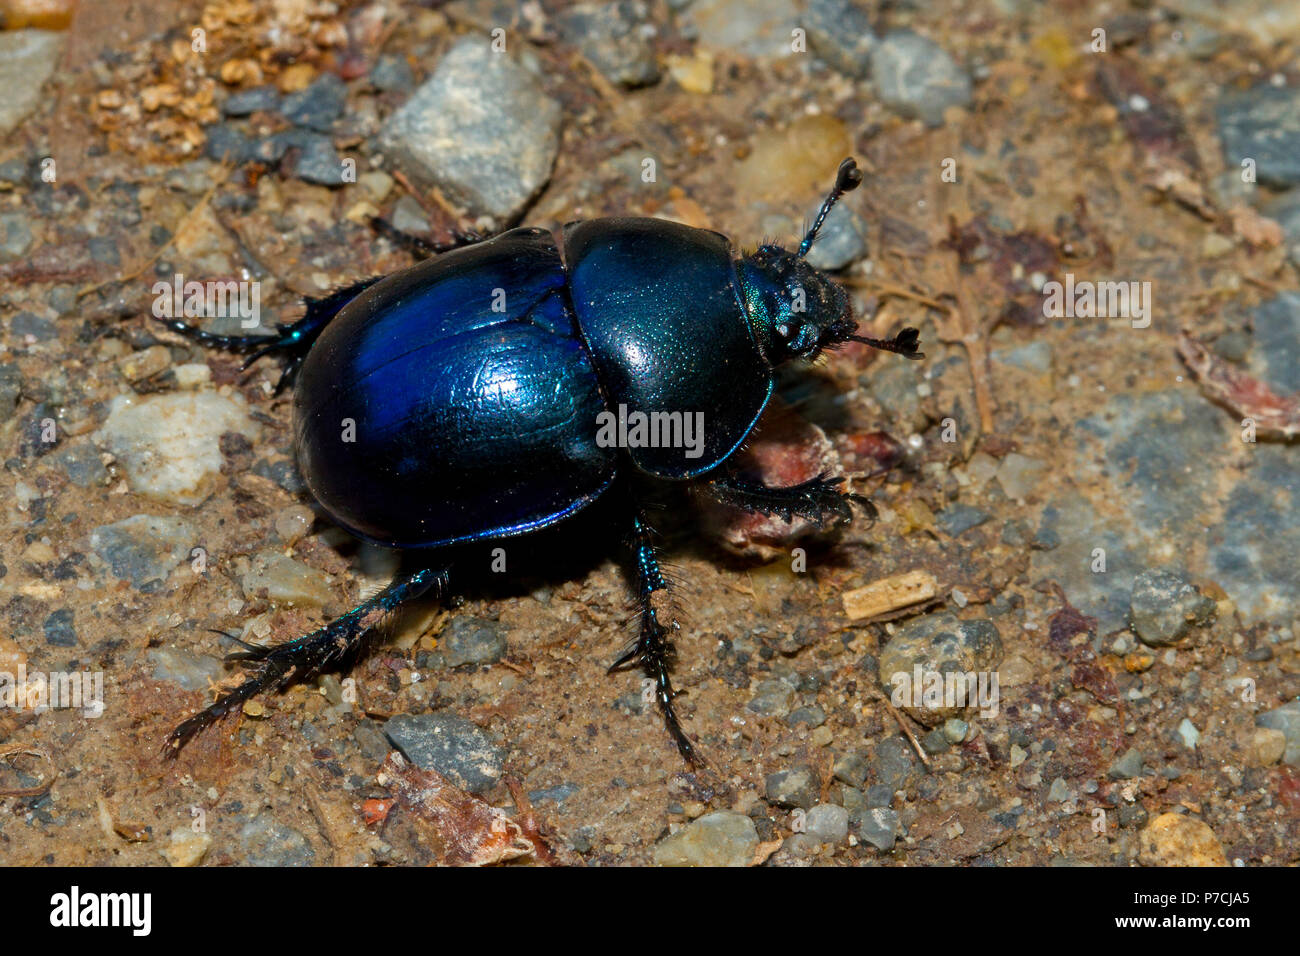 common dor beetle, (Geotrupes stercorarius) Stock Photo